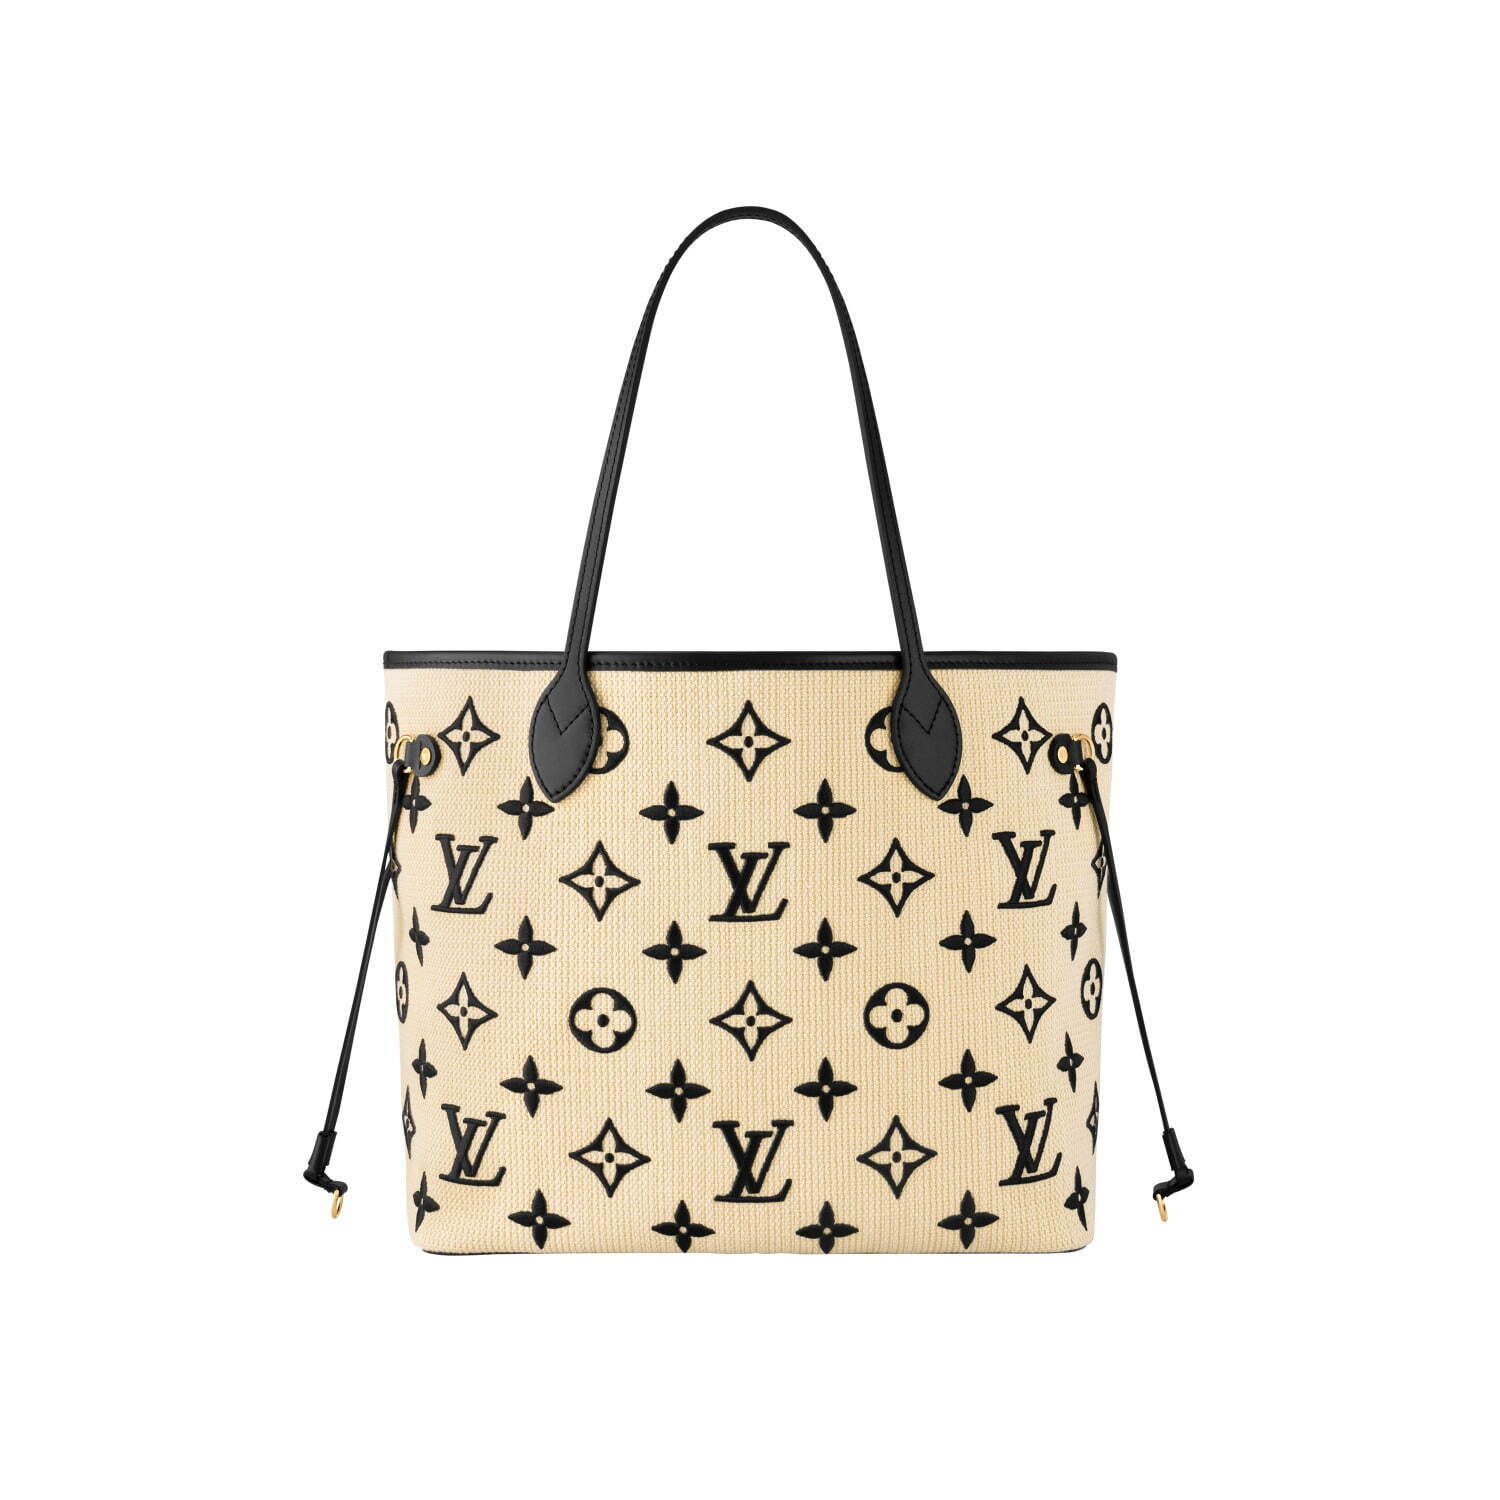 ルイ・ヴィトン“モノグラム・パターン刺繍”入りの新作バッグ、涼し気な